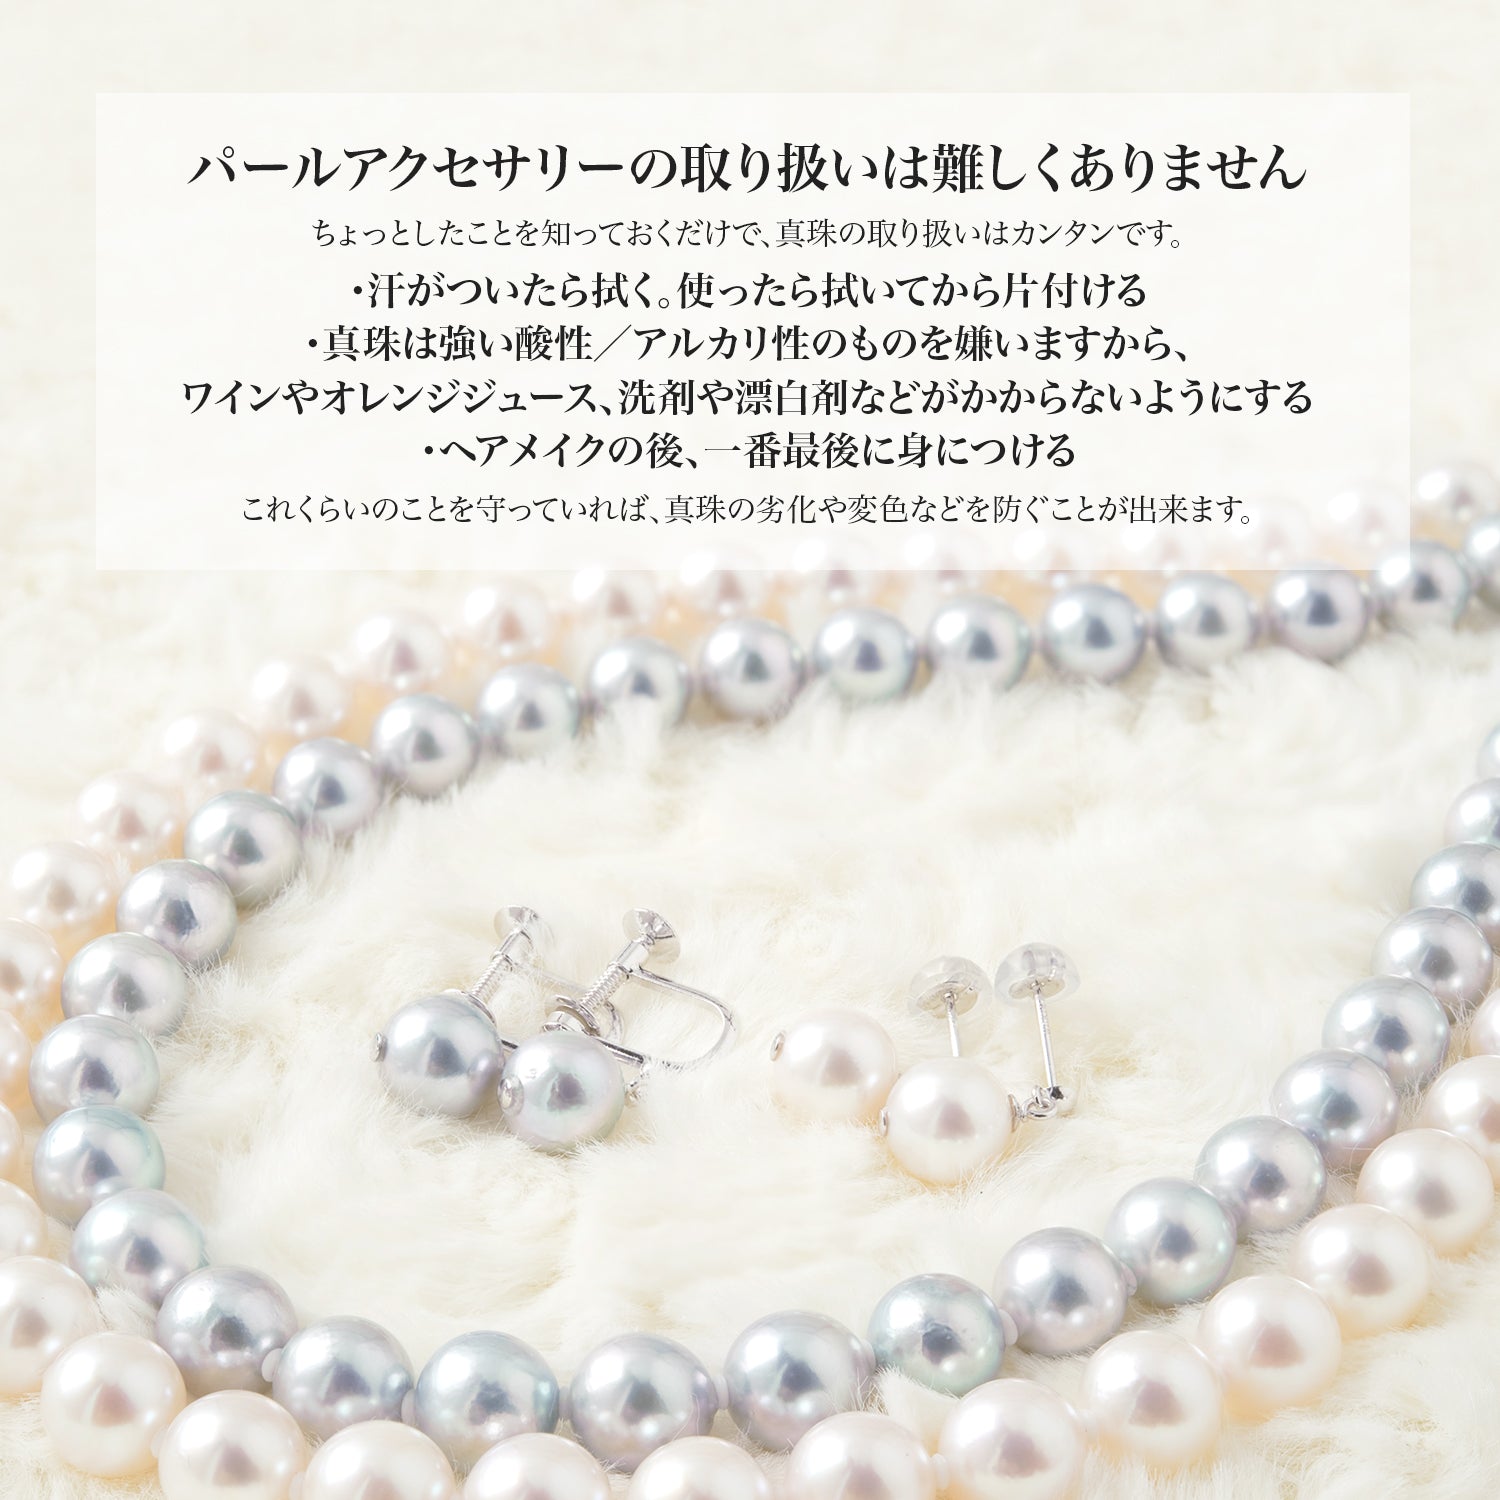 アコヤ真珠 一粒 ネックレス レディース ホワイト 6.0-6.5mm K18YG/K18WG 厚紙製ケース付